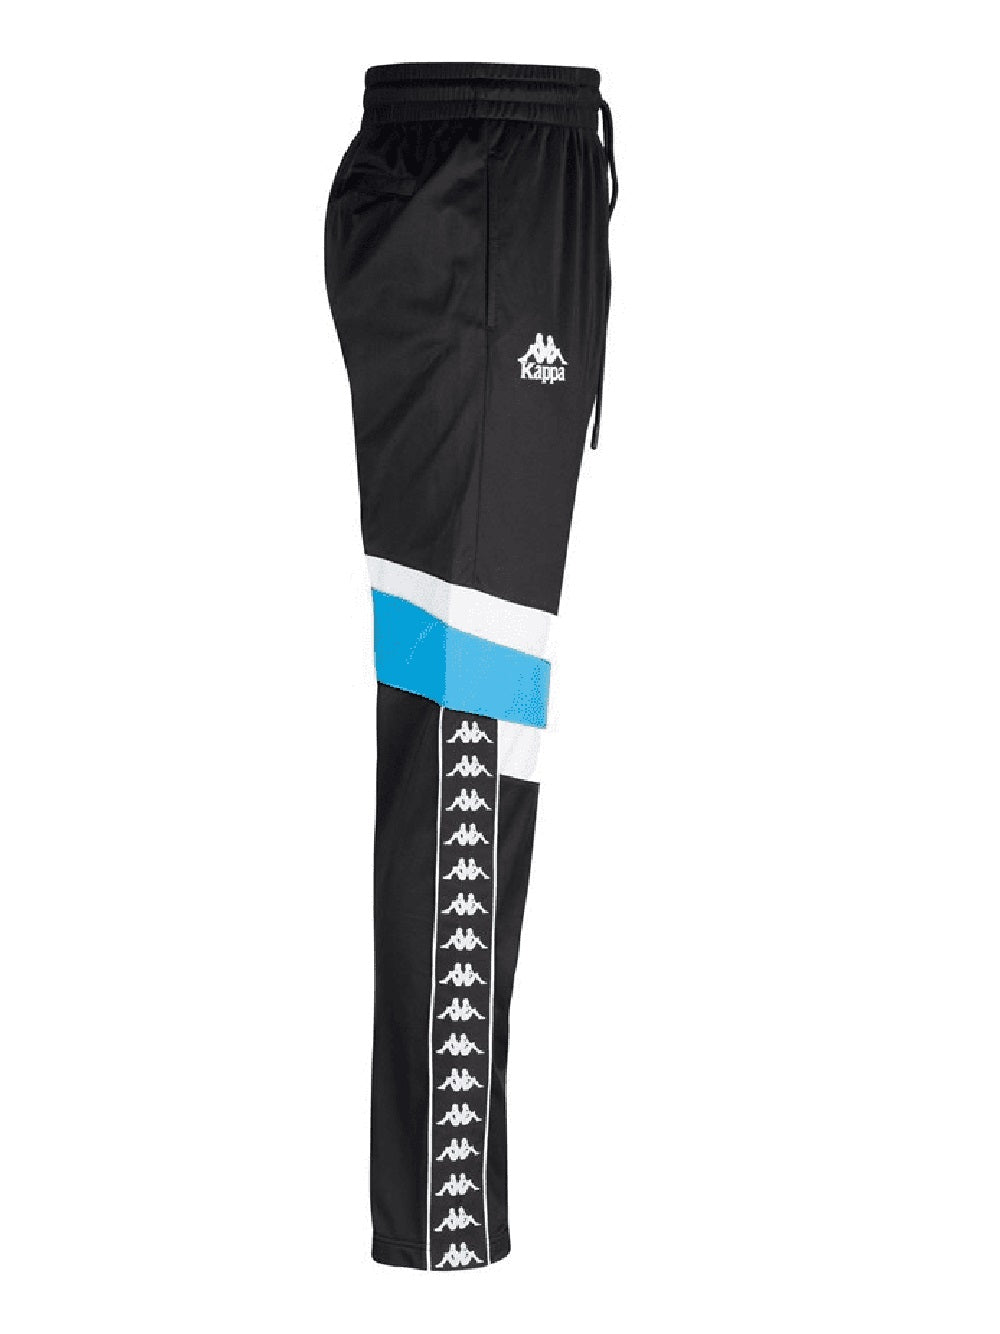 Pantalone Kappa con tasche laterali, tasca posteriore con zip, vita elasticizzata con coulisse interna, banda Omini jacquard con profili applicata sui lati.